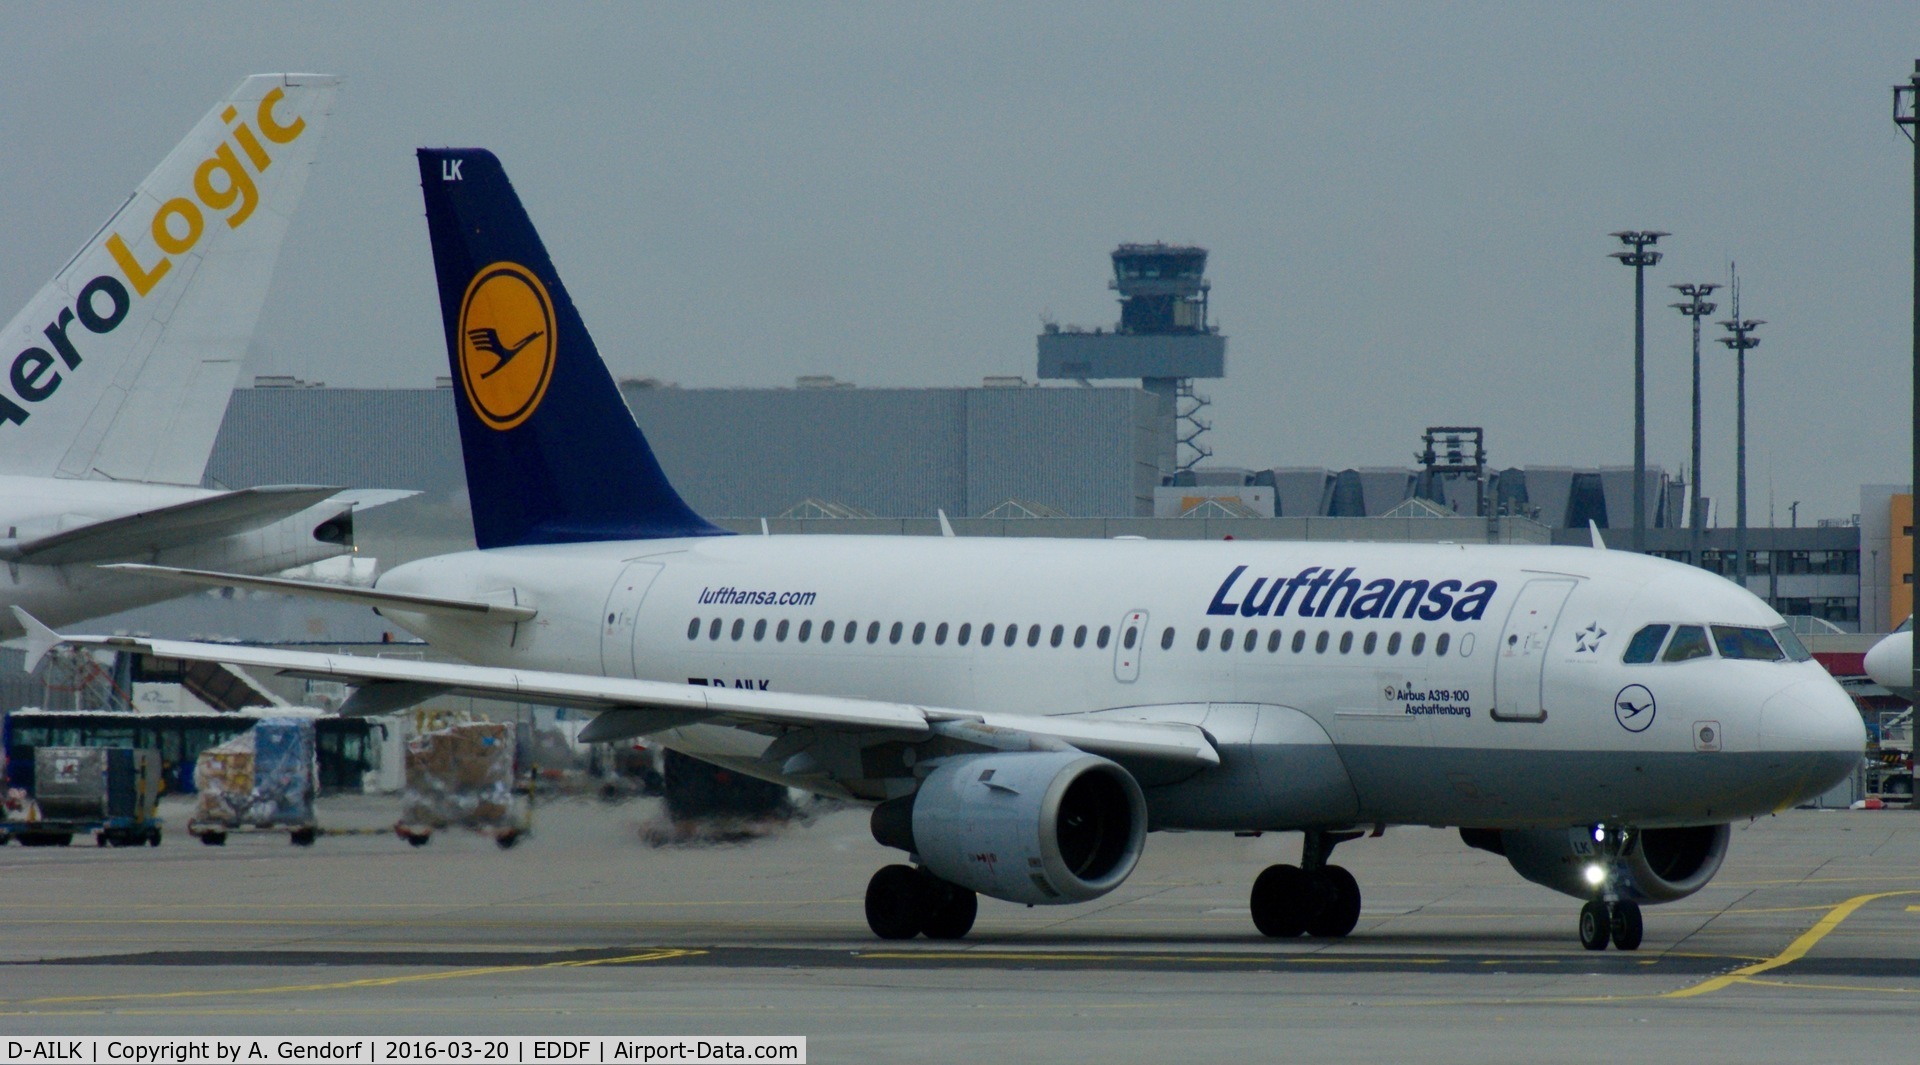 D-AILK, 1997 Airbus A319-114 C/N 679, Lufthansa, is here taxiing through the cargo area at Frankfurt Rhein/Main(EDDF)